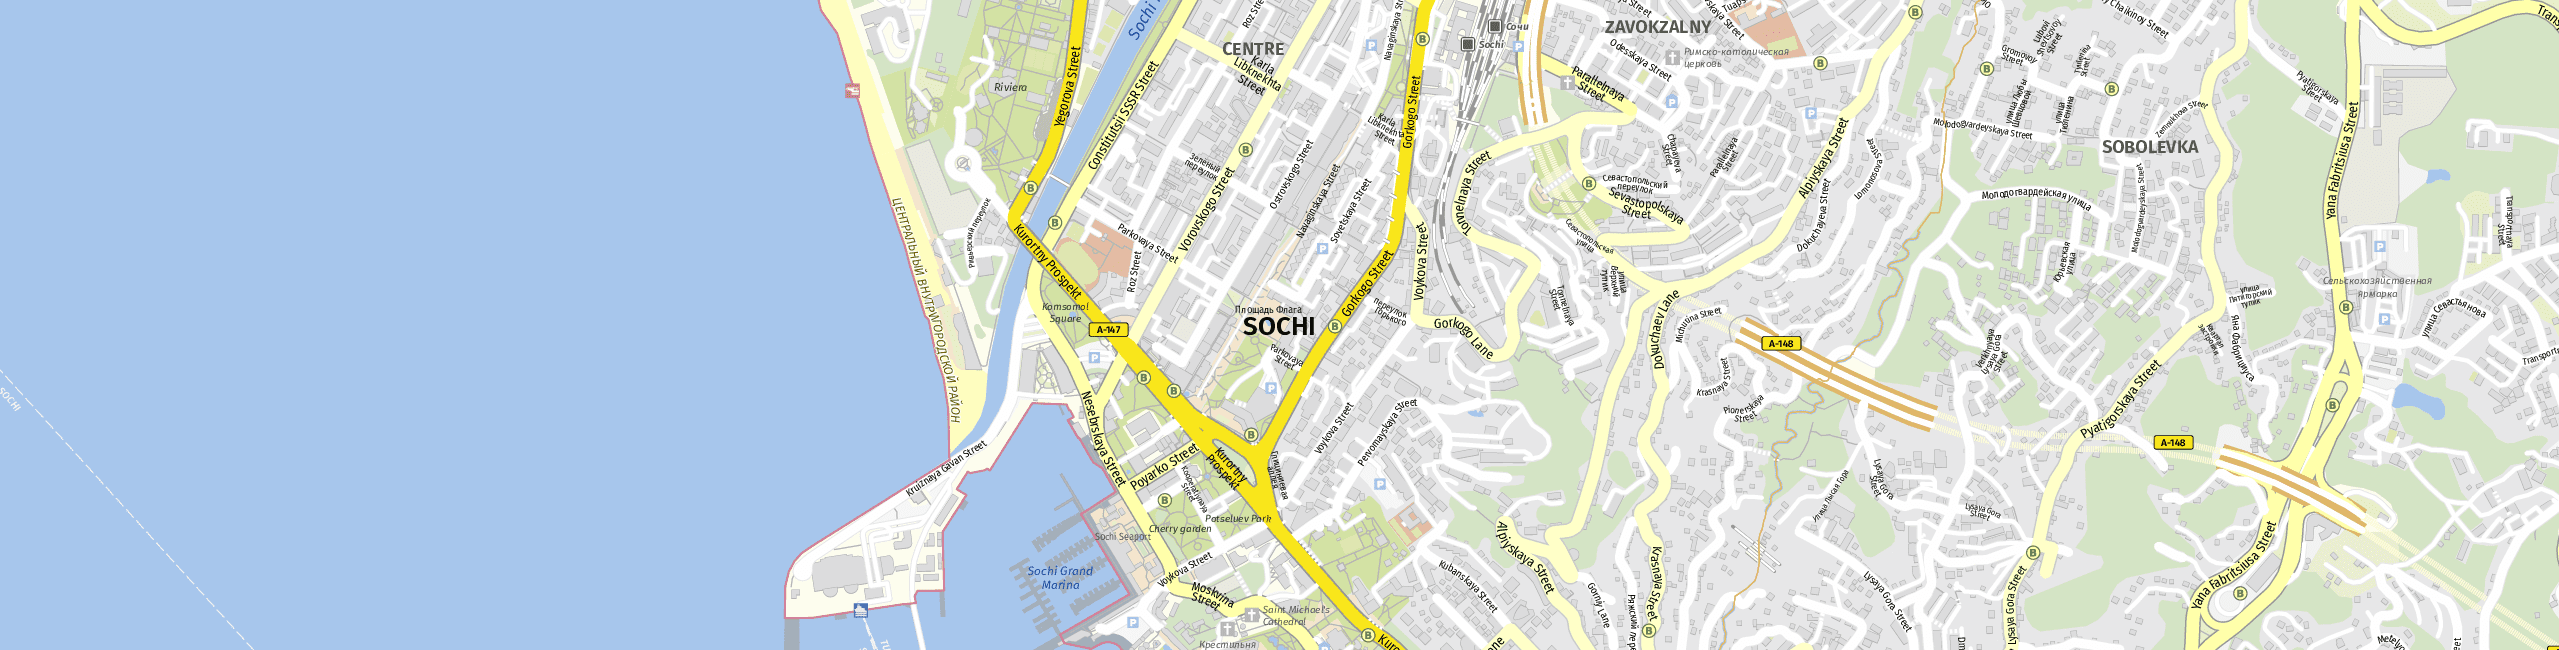 Stadtplan Sotschi zum Downloaden.